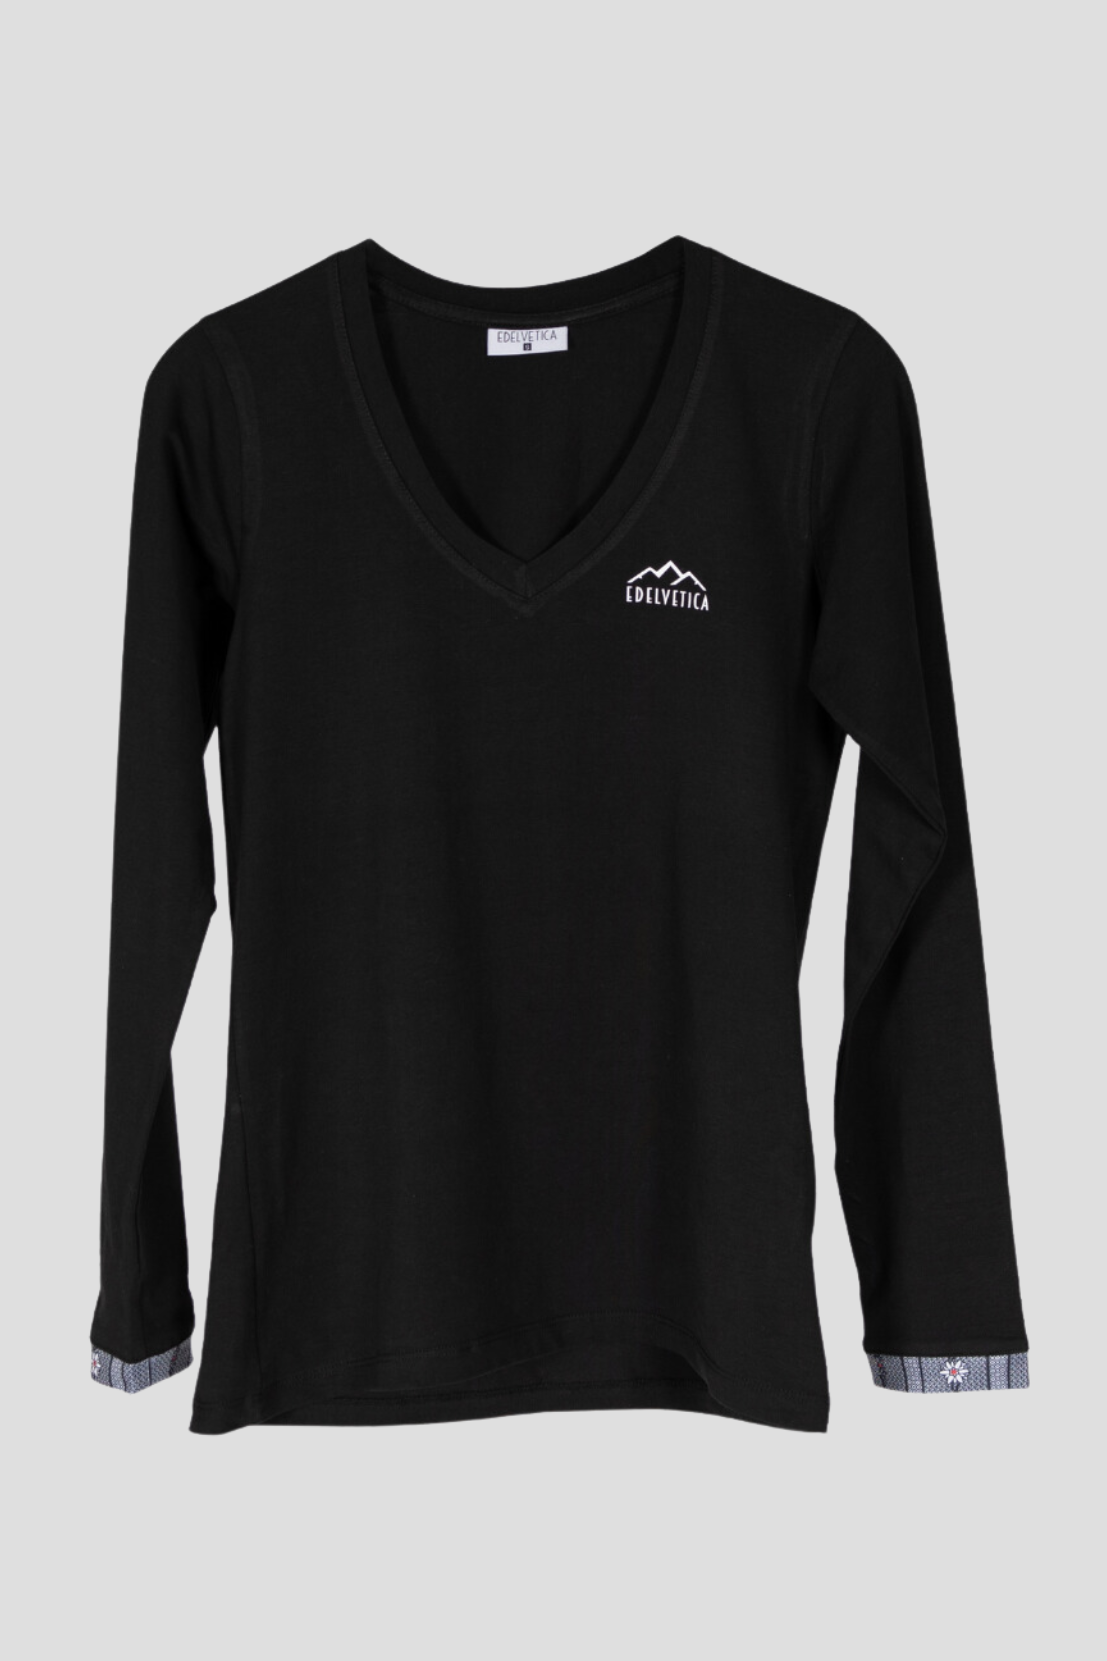 Damen-Langarm T-Shirt von Edelvetica mit Edelweiss-Armabschluss. Das Shirt hat einen V-Ausschnitt und ist aus einer weichen Baumwollmischung mit einem kleinen Anteil Elasthan gefertigt, was für Komfort und eine gute Passform sorgt. Einfaches, aber stilvolles Design, geeignet für lässige Outfits.